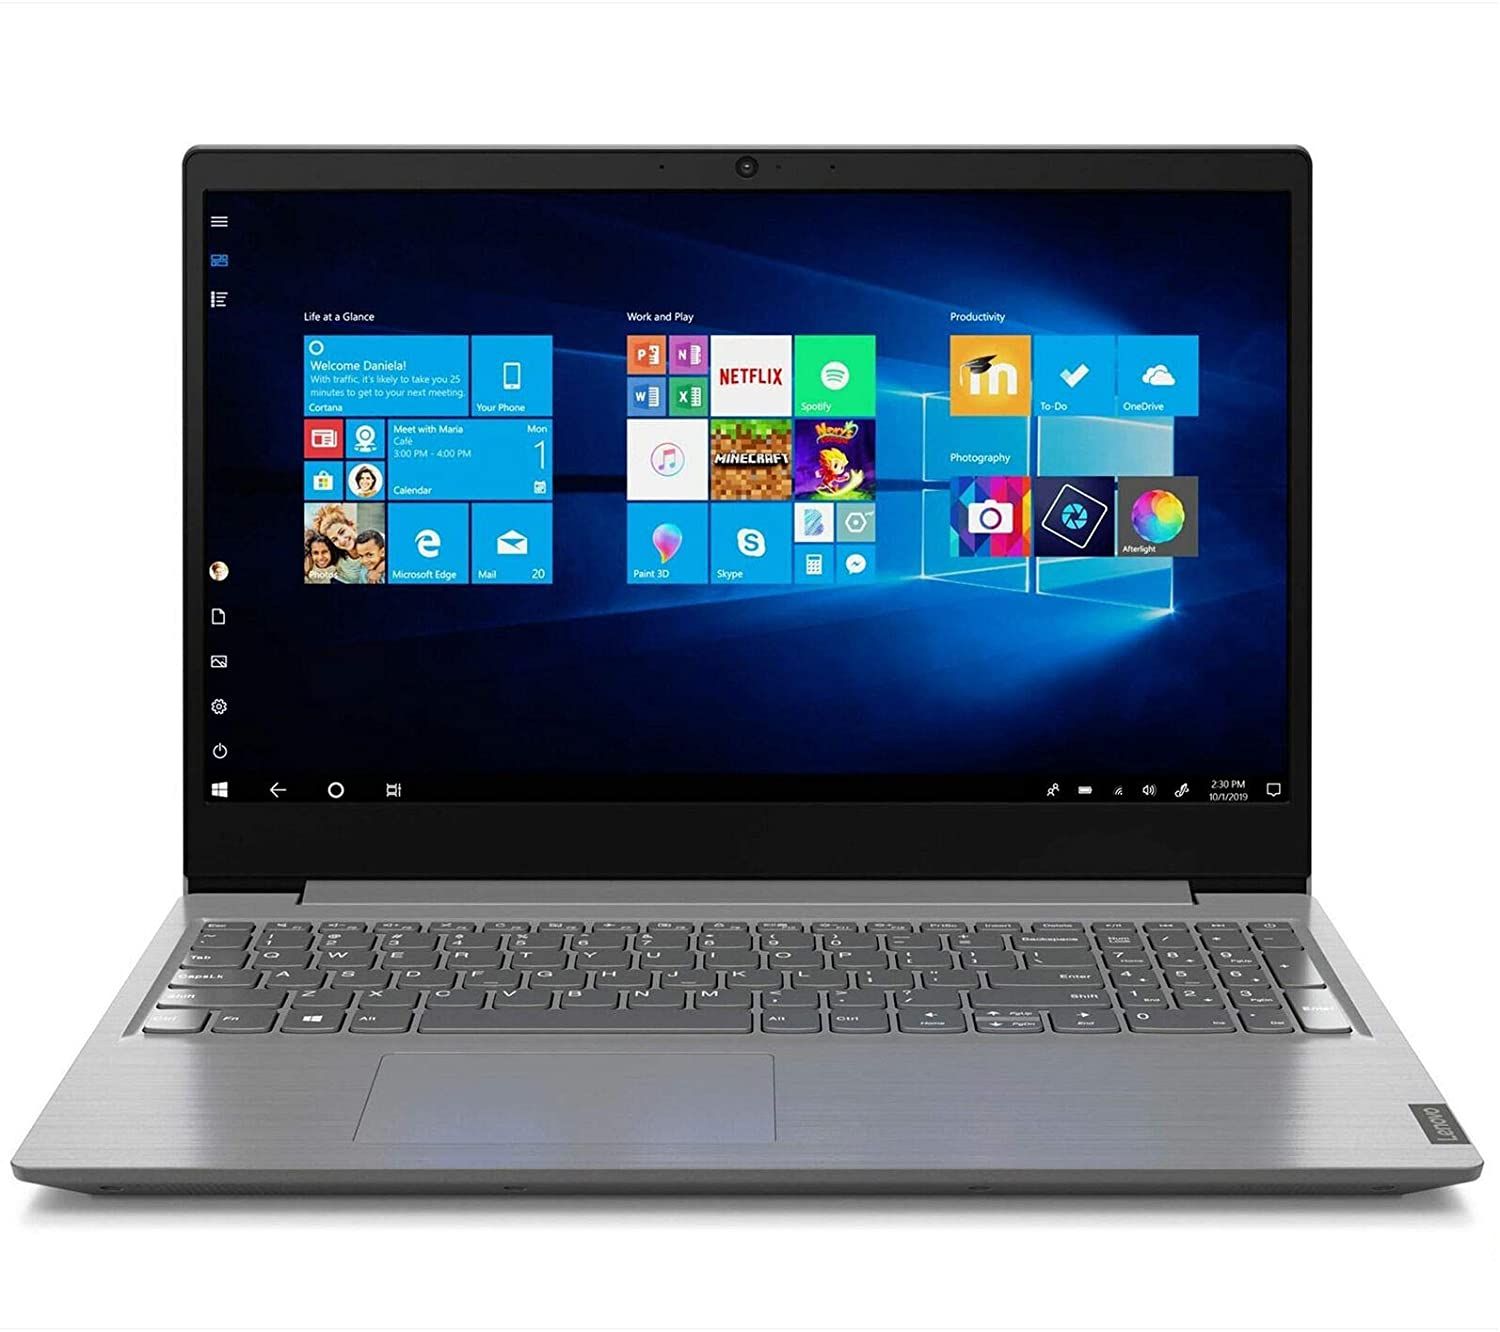 Notebook Lenovo V15 ADA, 15.6" HD, AMD Athlon Silver 3050U, 2.30GHz, Ram 4GB DDR4, Disco Duro 1TB SATA